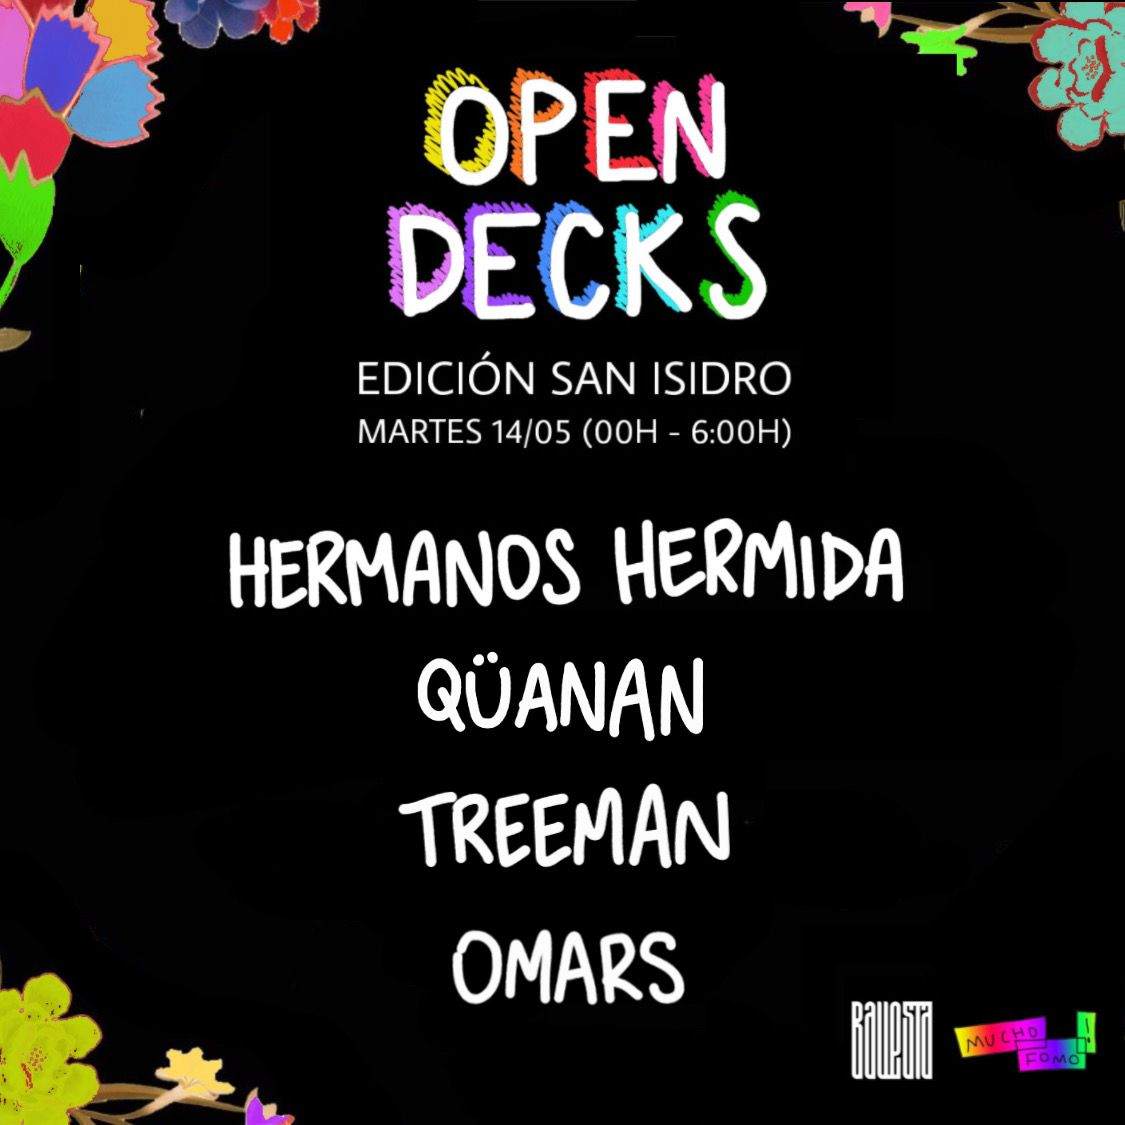 MUCHO FOMO: Open decks (Edición San Isidro) - Página frontal